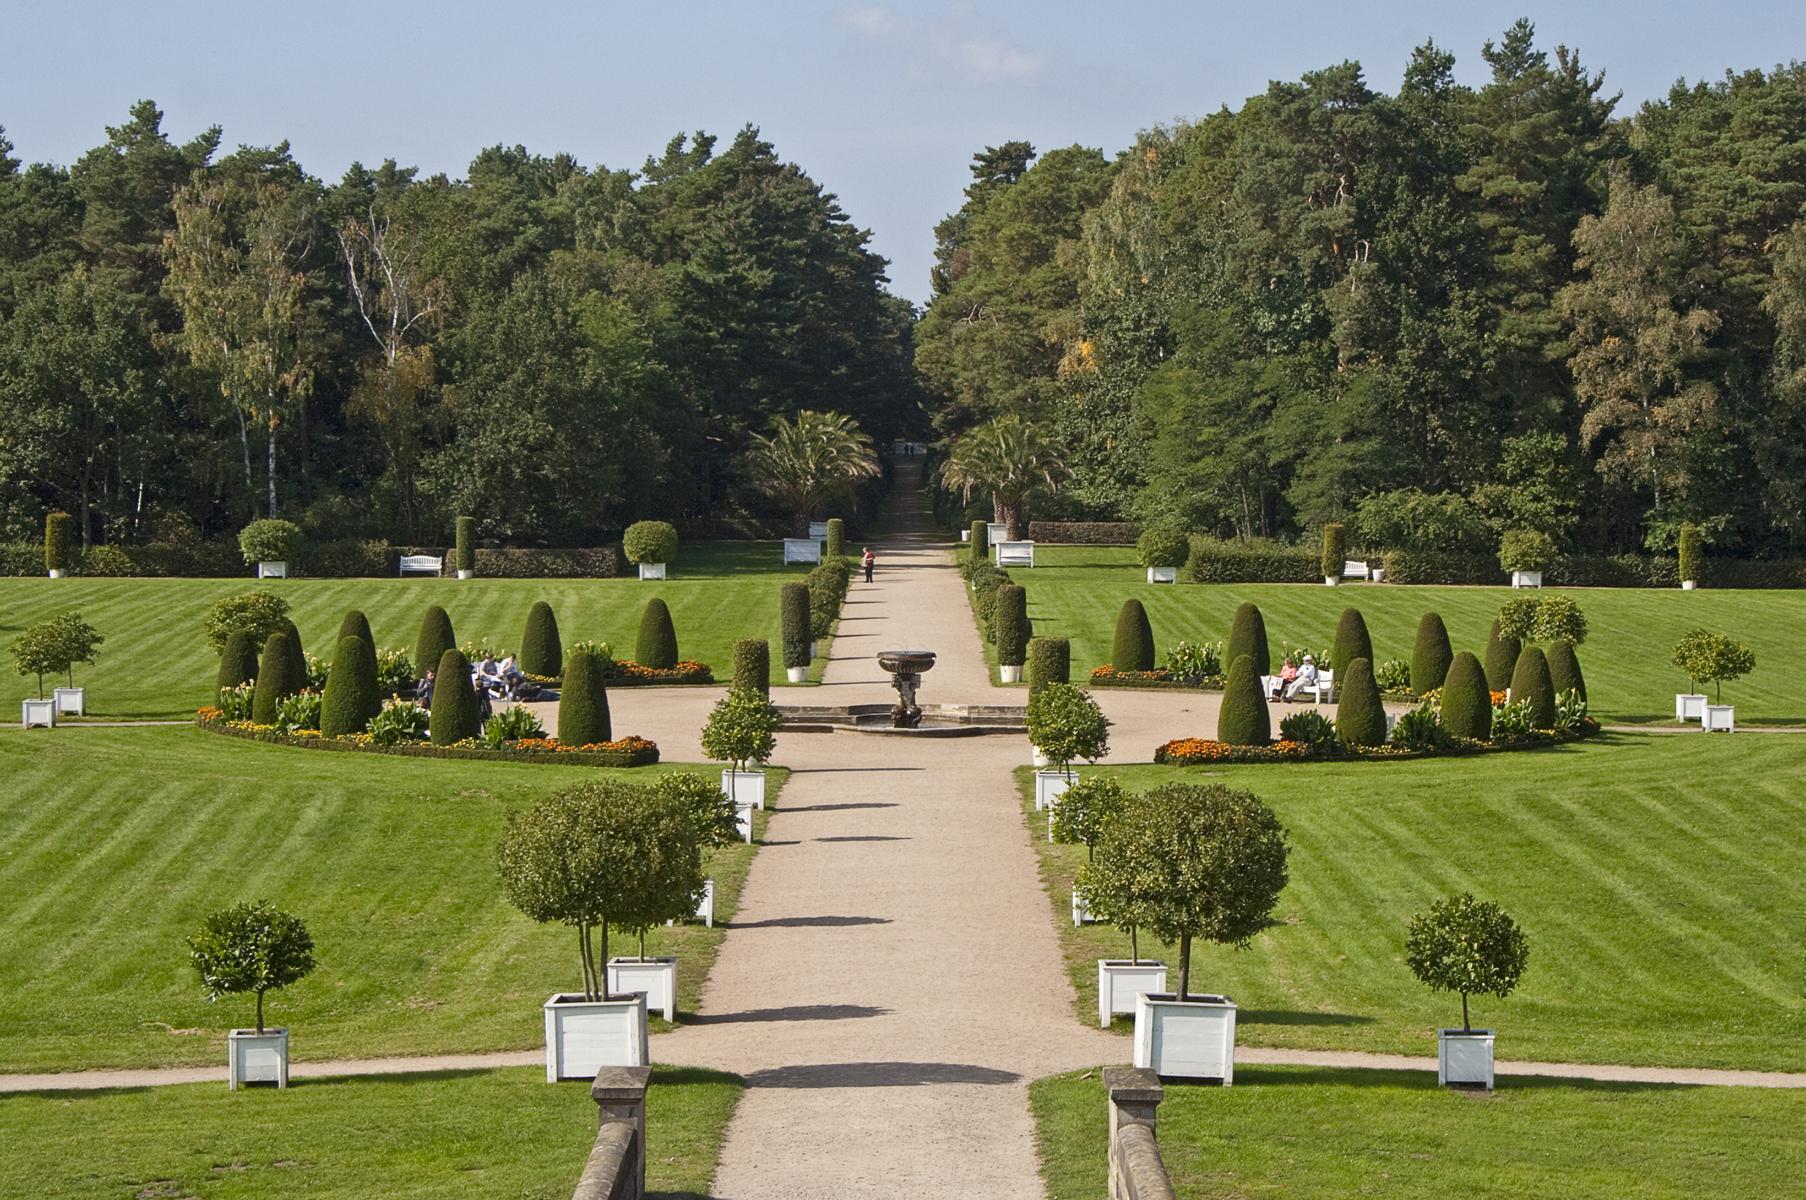 Schloss und Schlosspark Oranienbaum im Gartenreich Dessau Wörlitz - ©Peter Dafinger